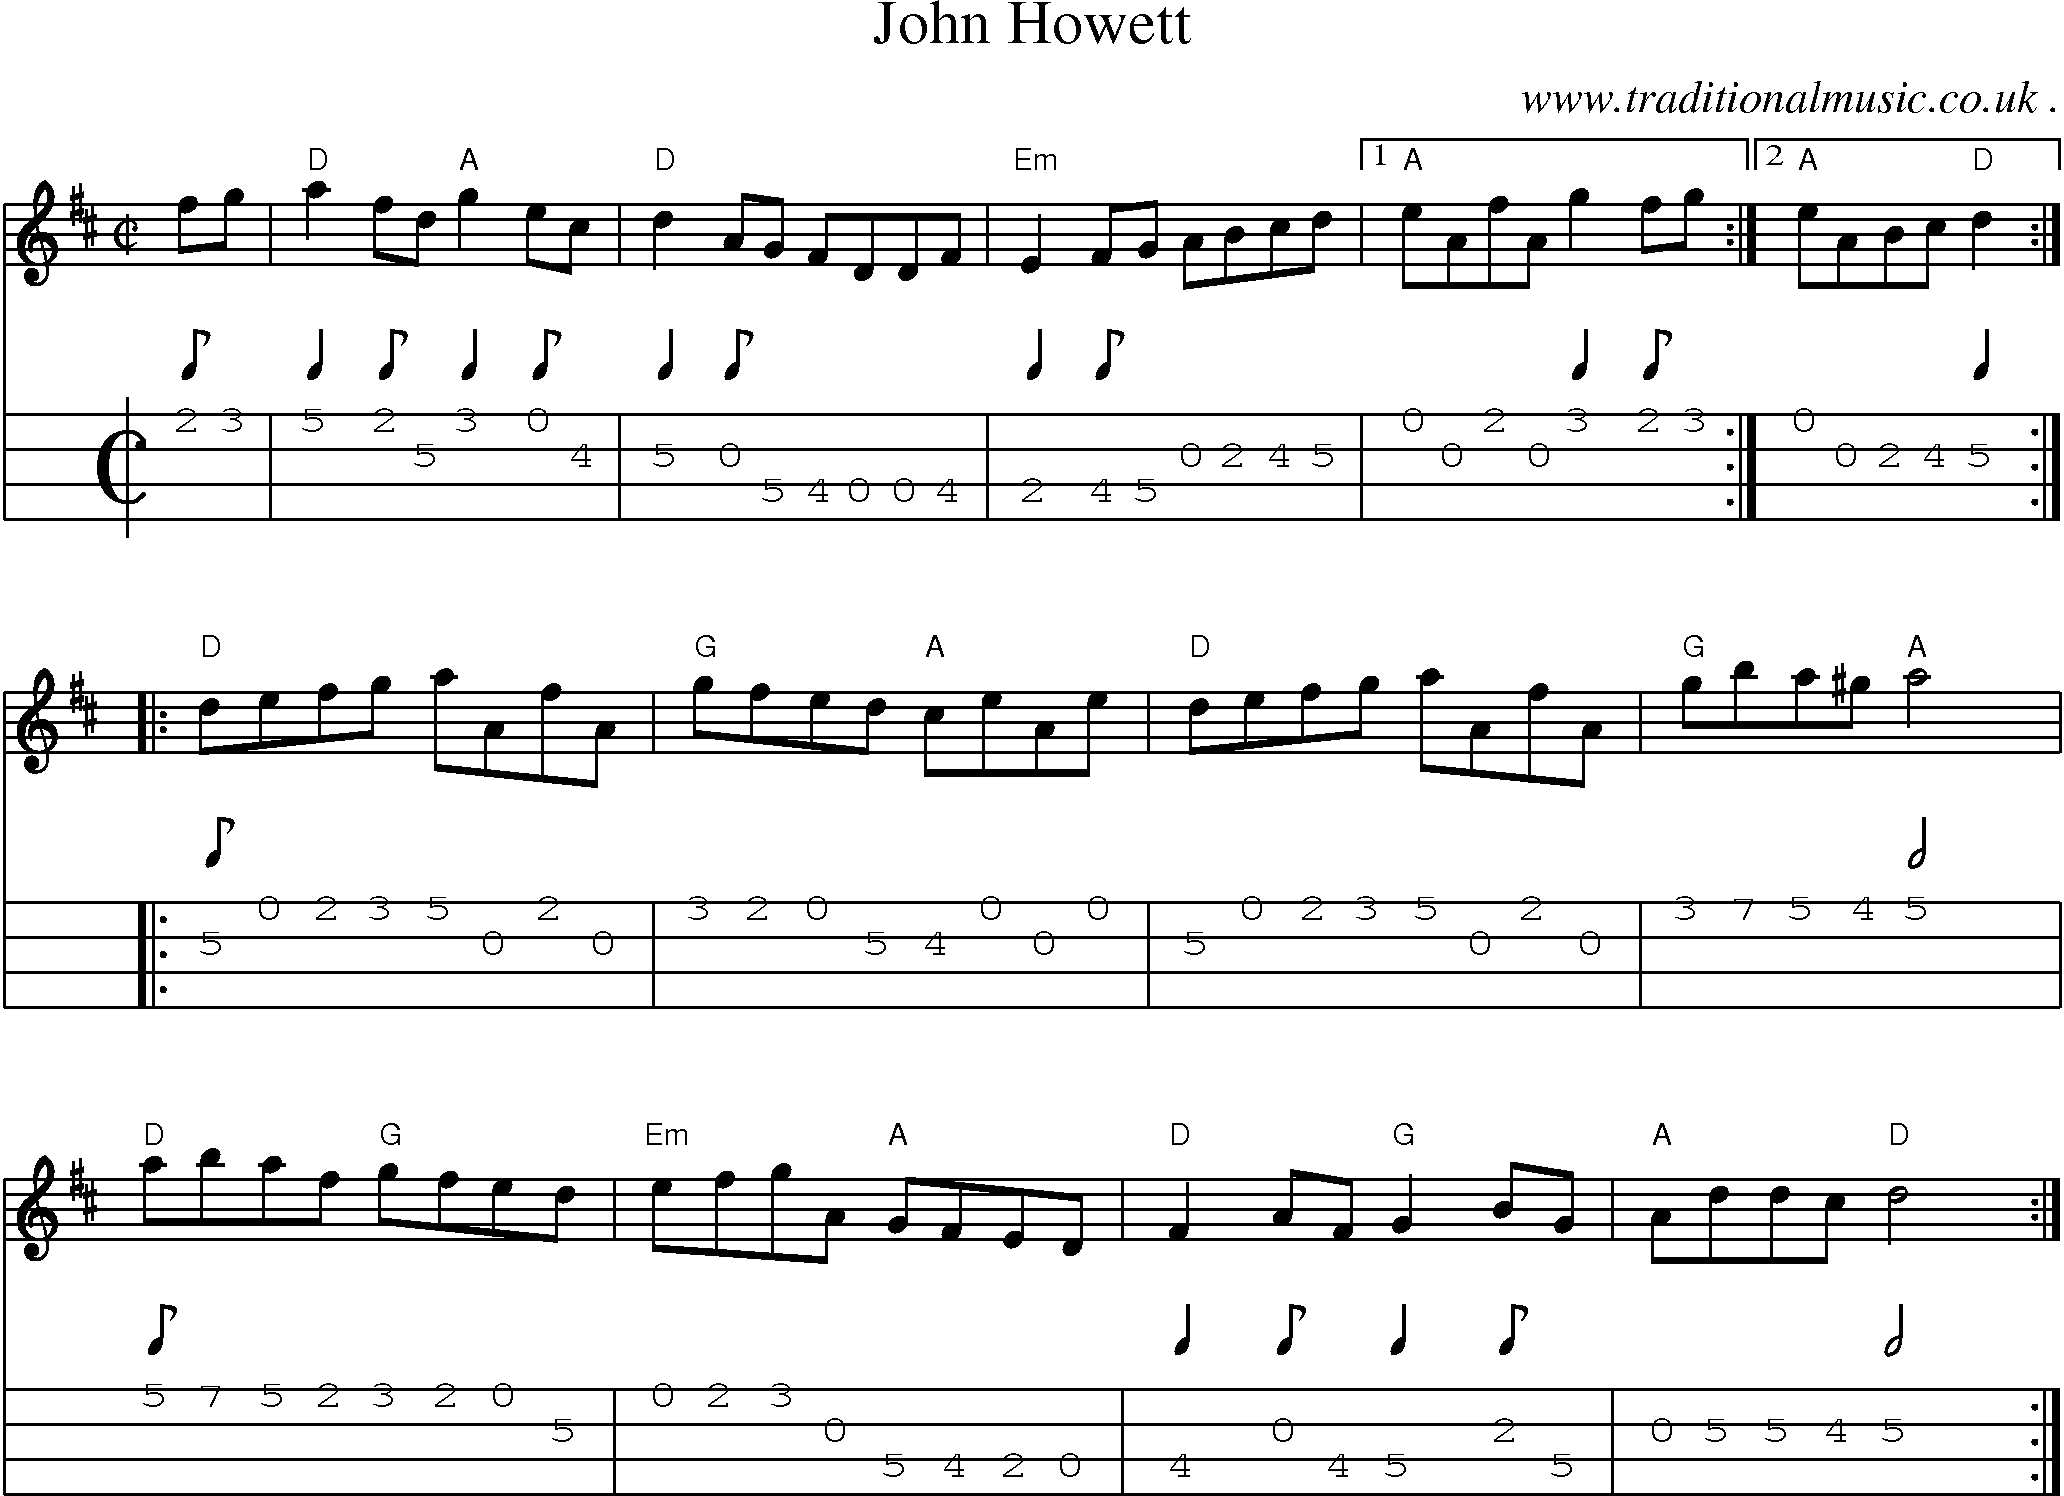 Music Score and Guitar Tabs for John Howett